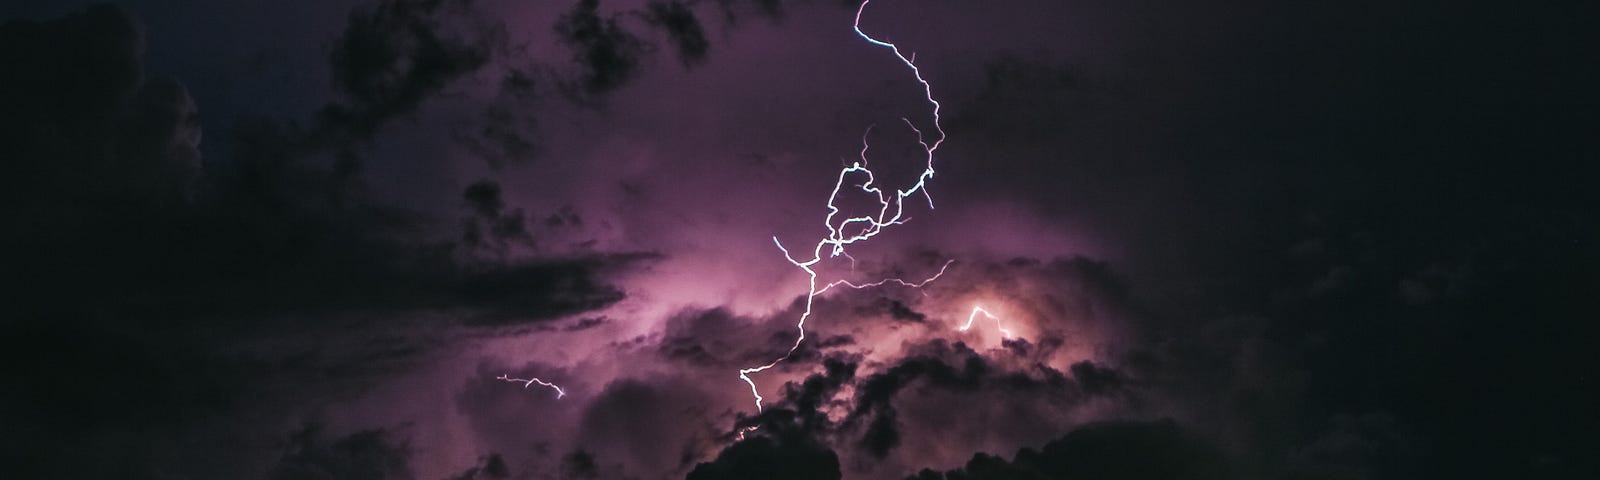 lightning in a thunderstorm